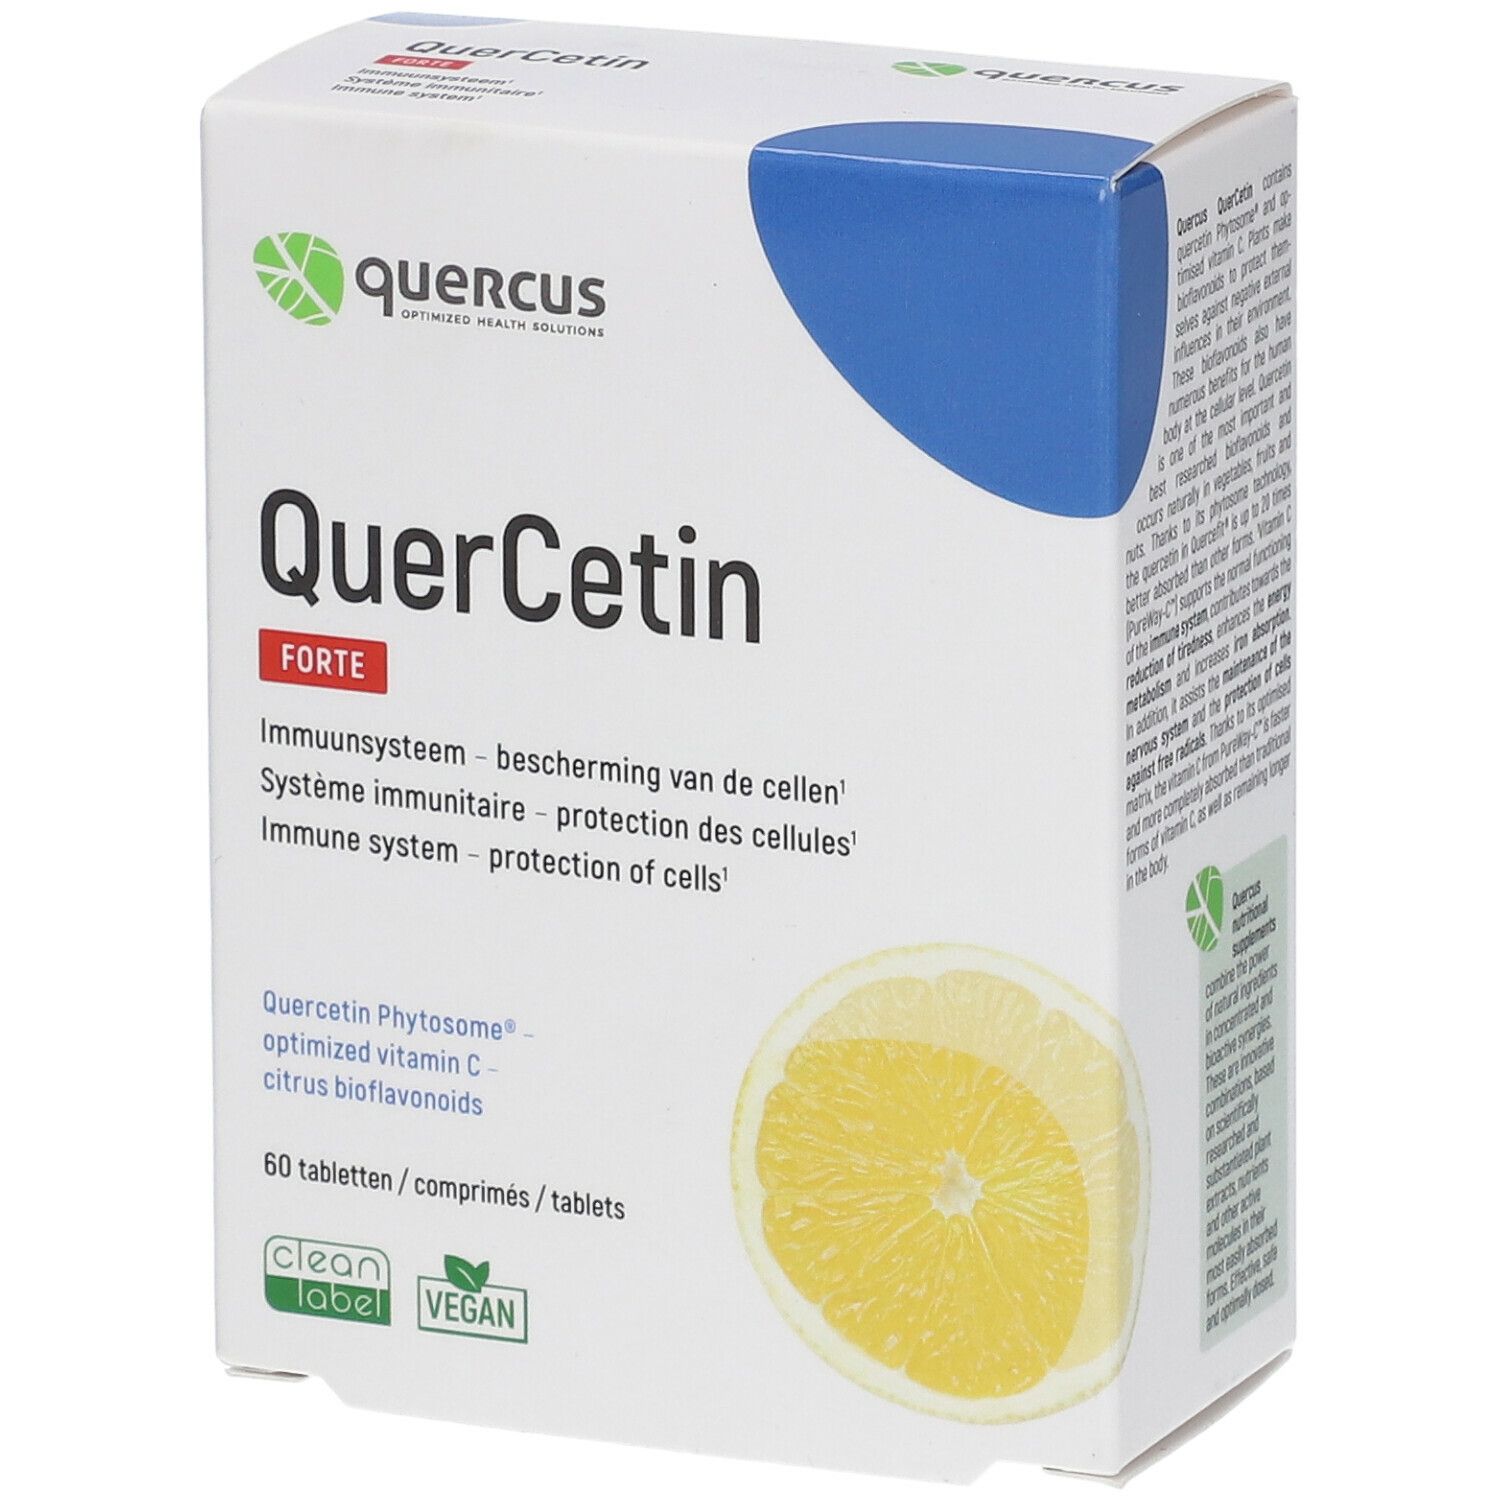 Quercus QuerCetin Citron